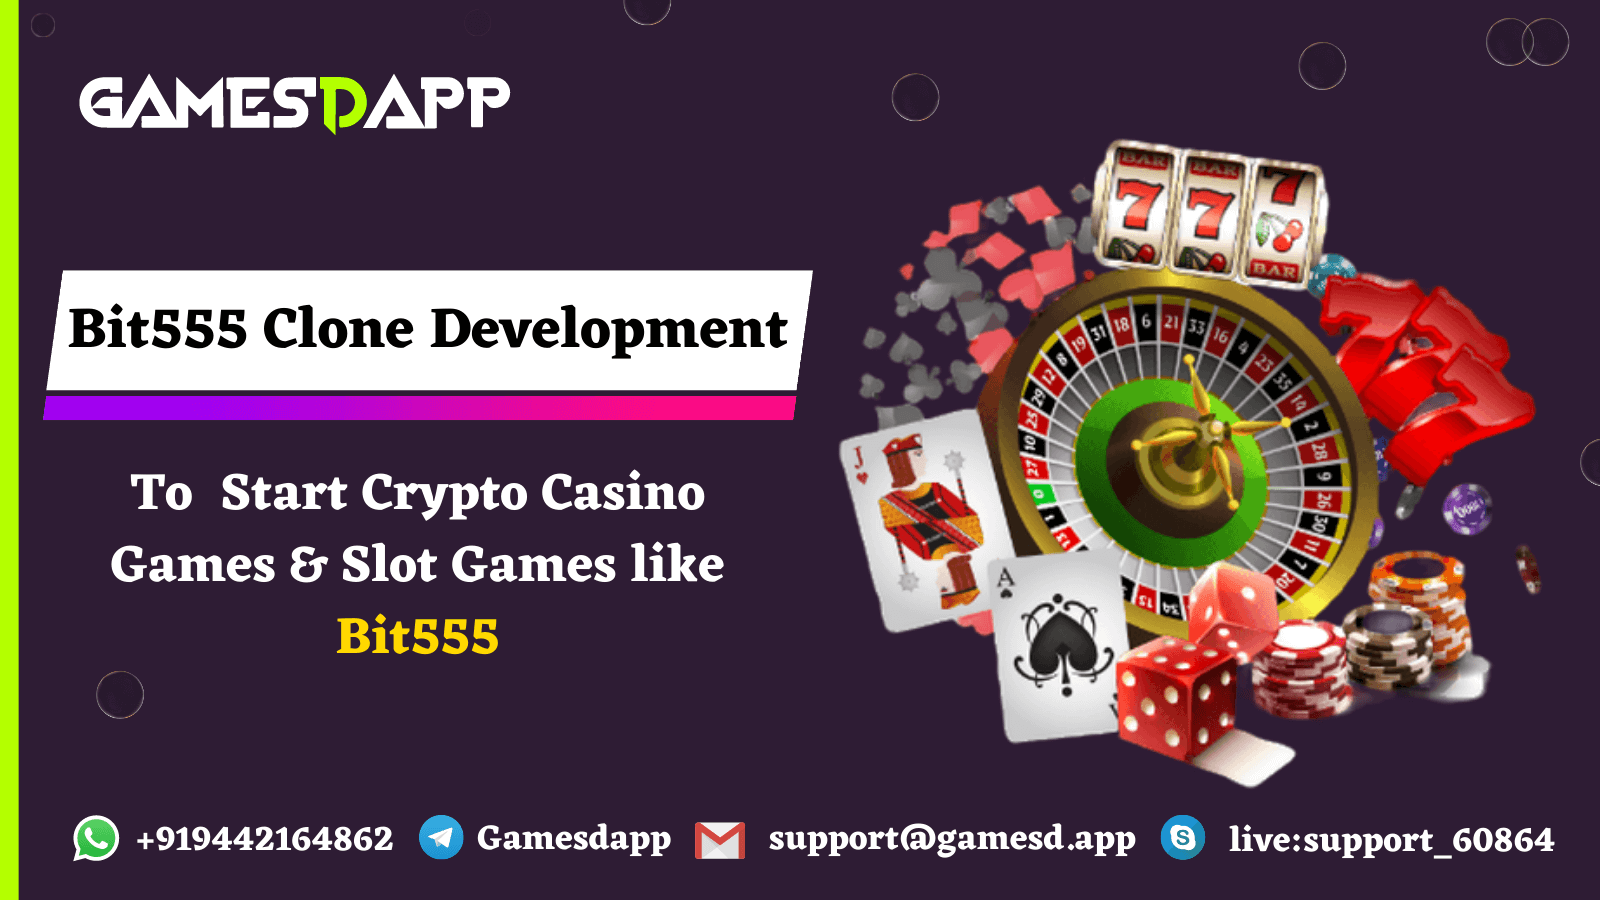 Bit555 Clone Development - To Start Crypto Casino Games & Slot Games like Bit555